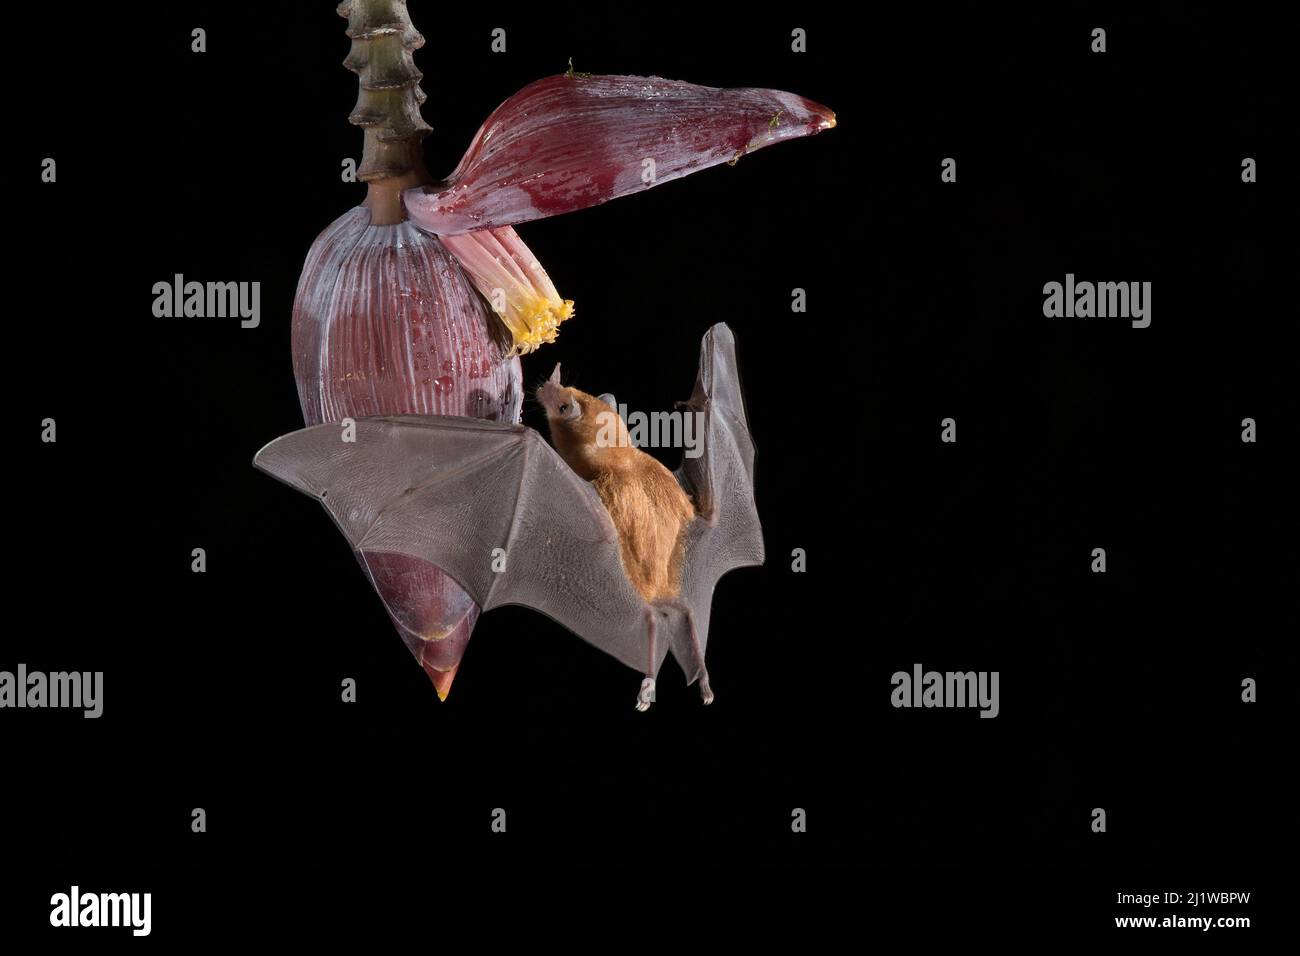 Bat de Nectar d'orange (Lonchophylla robusta) se nourrissant de fleurs de banane, forêt pluviale des plaines, Costa Rica. Novembre. Banque D'Images